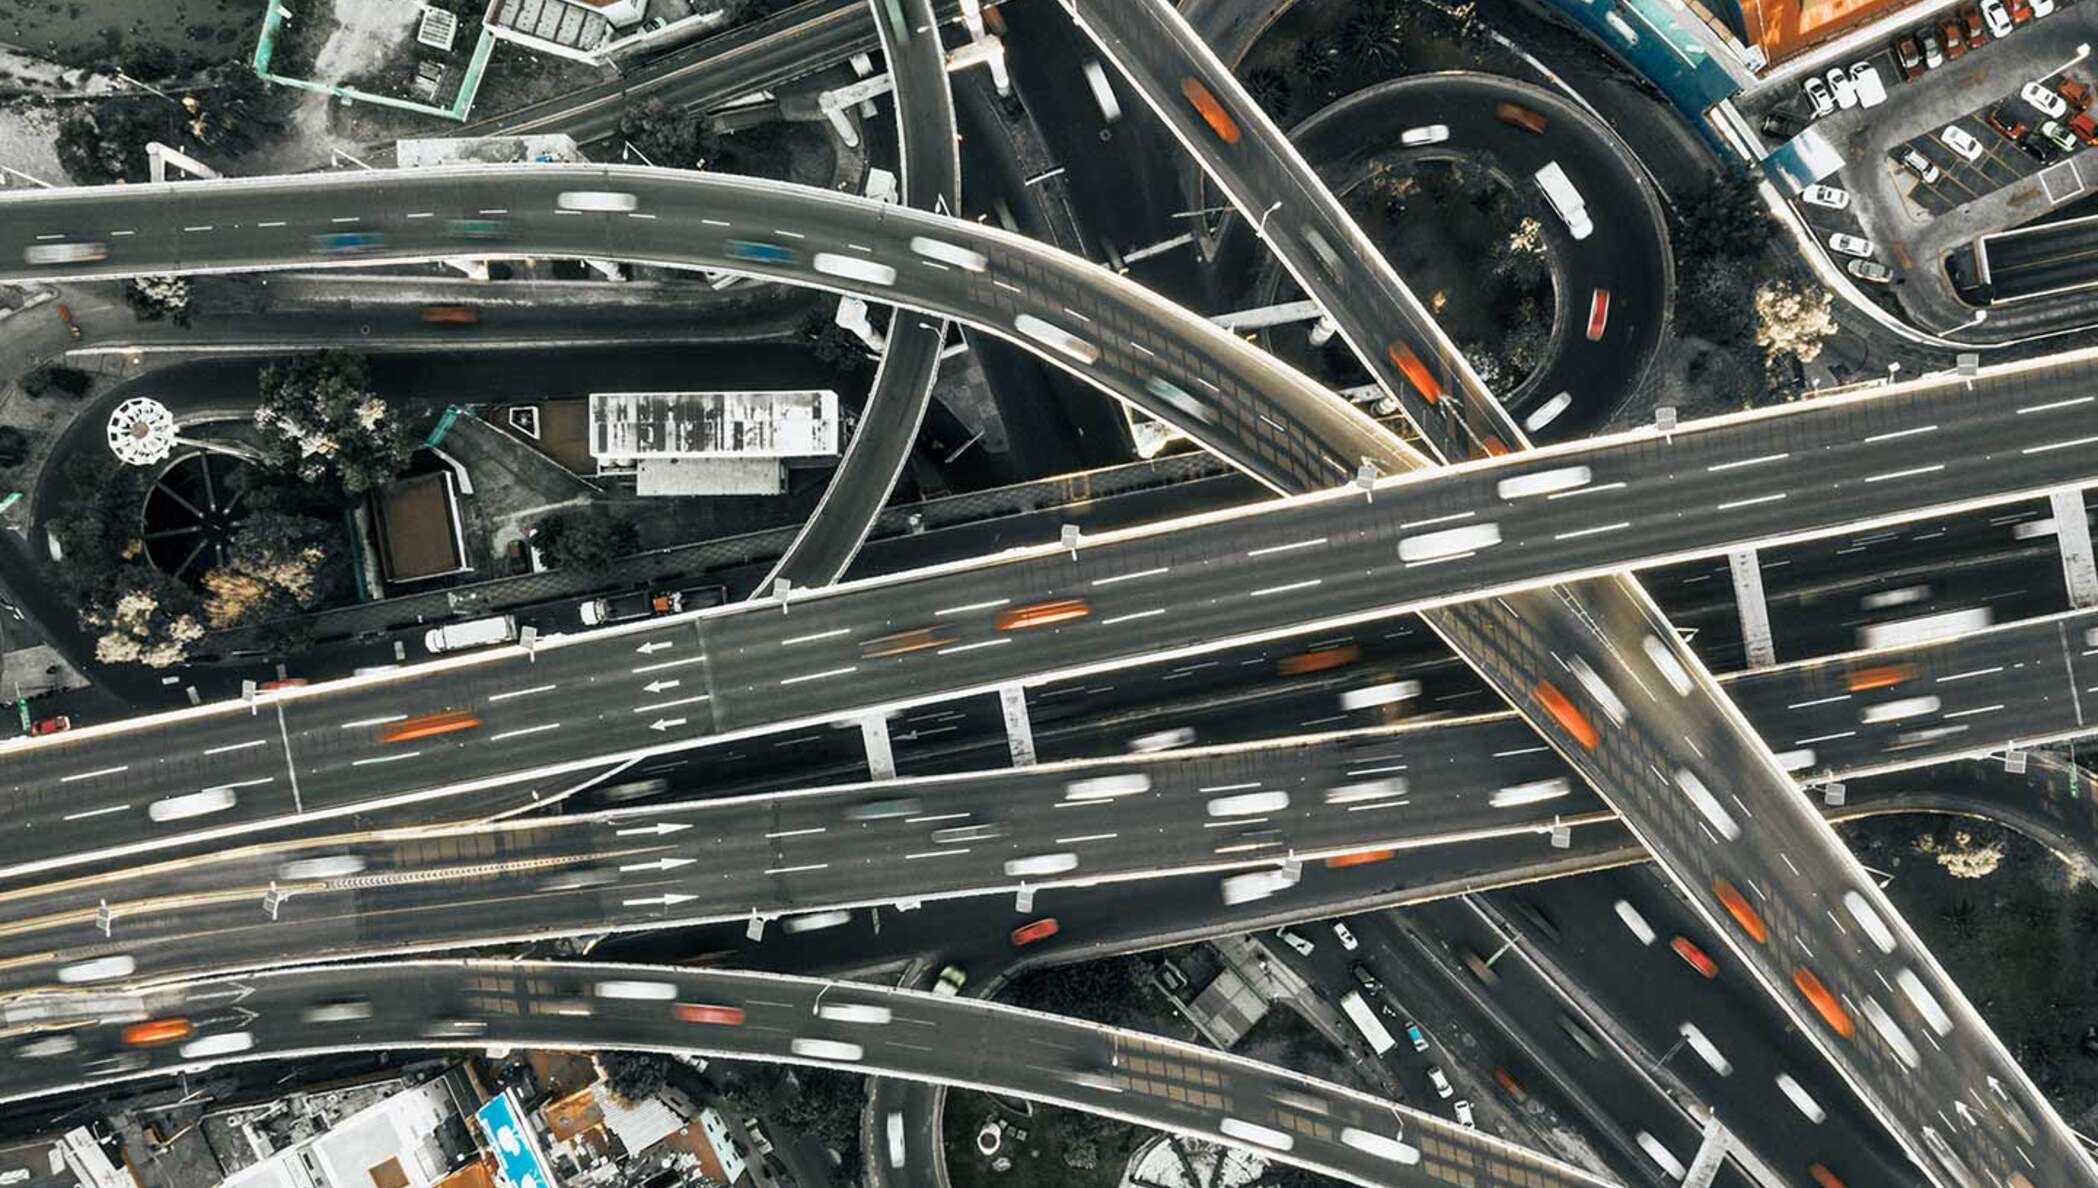 Imagen de un complejo de carreteras visto desde arriba